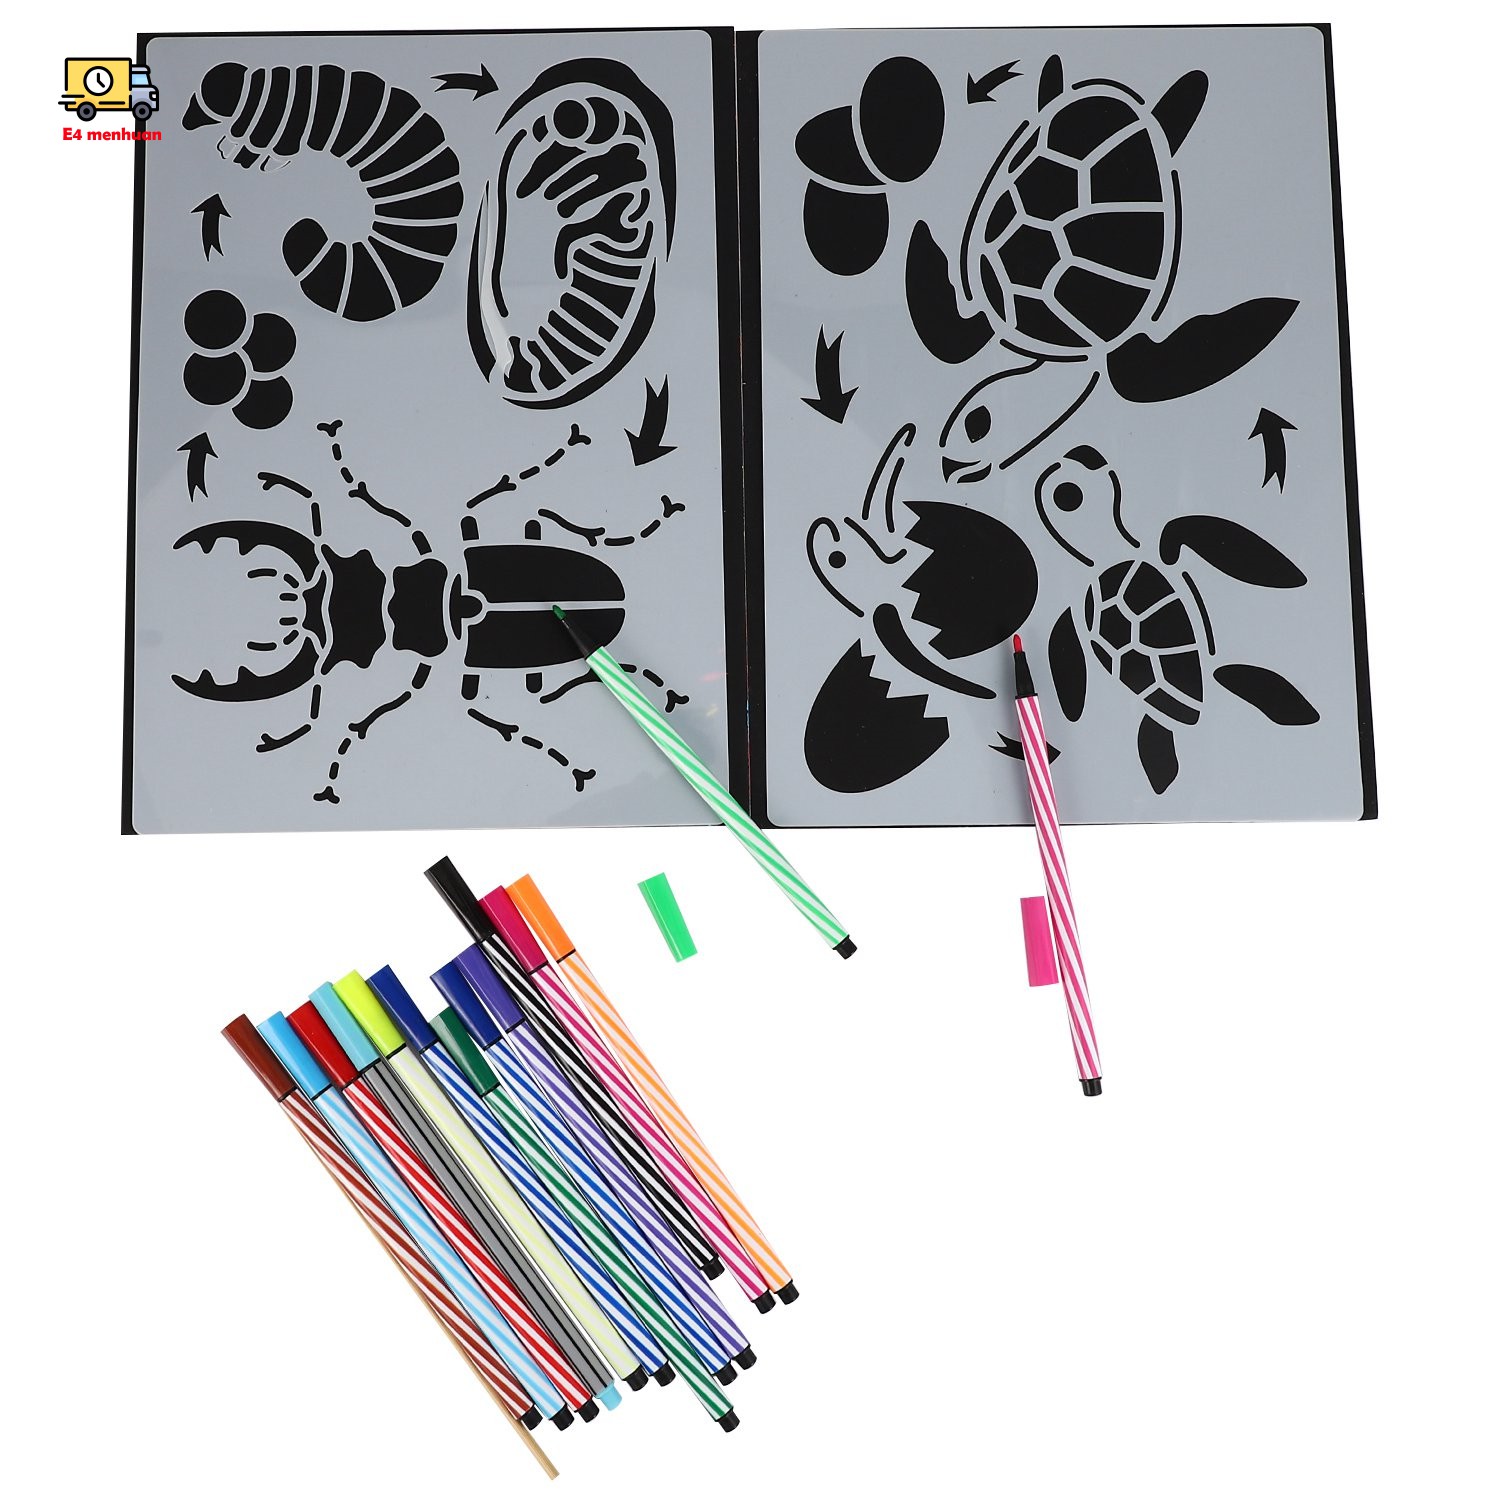 Bộ công cụ giấy bút vẽ tranh theo khuôn mẫu rỗng dành cho trẻ em